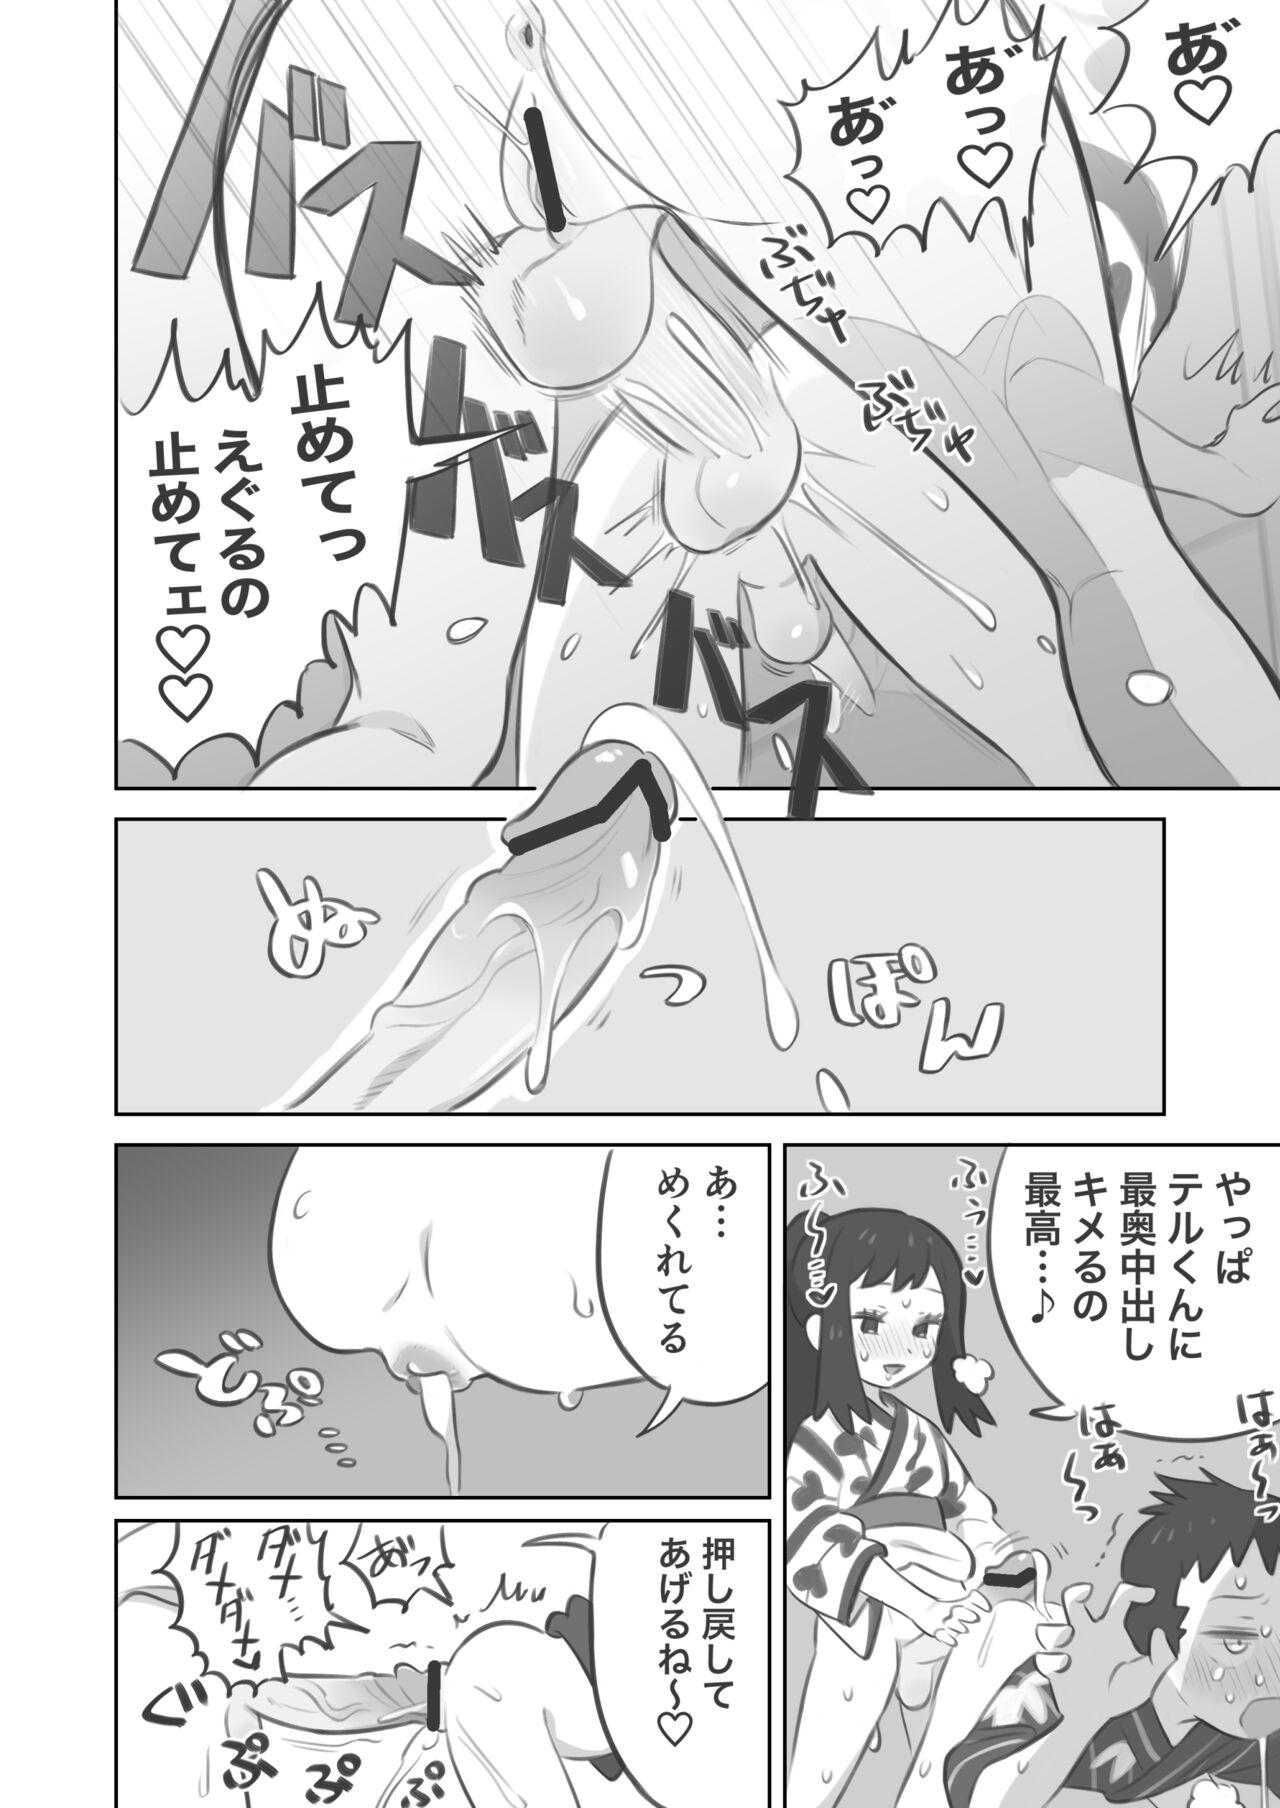 Edging Futanari shujinkō-chan ga Teru senpai o horu manga 2 - Pokemon | pocket monsters Reality - Page 10